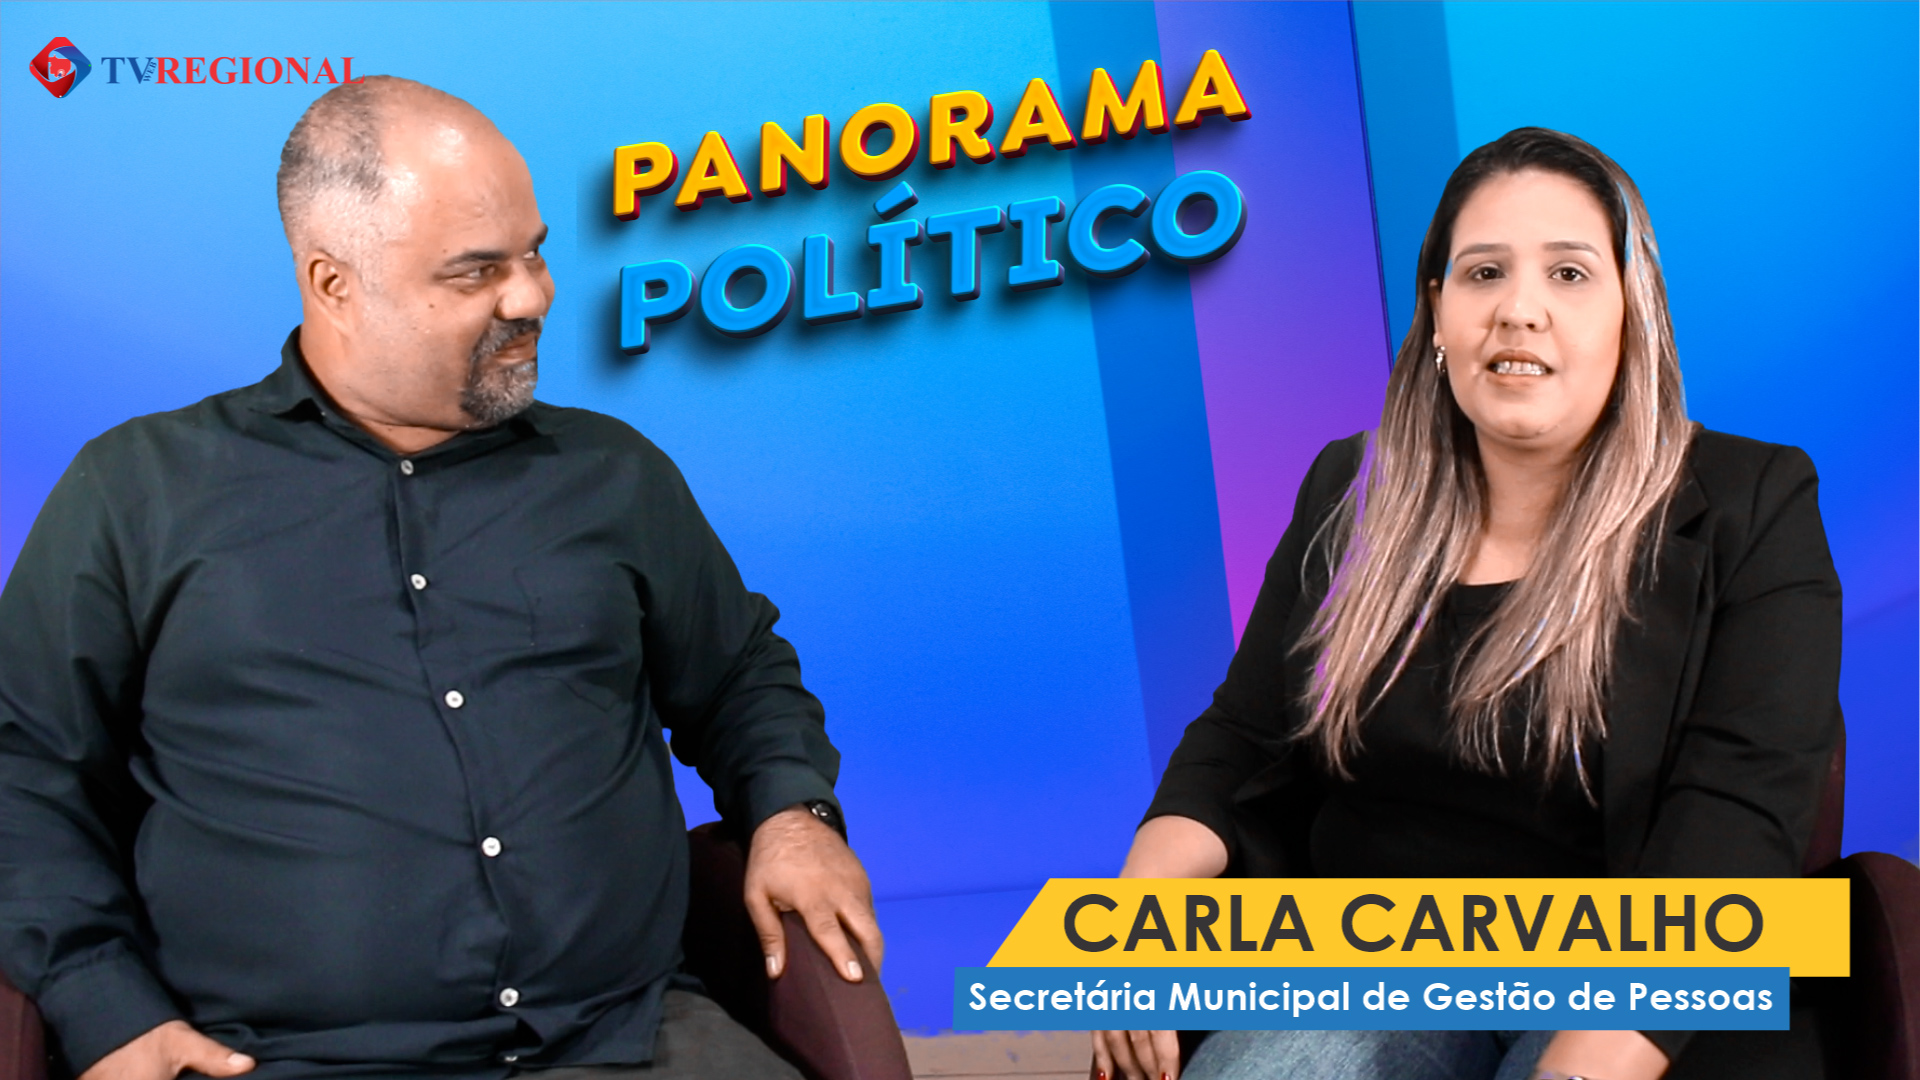 Panorama Político com Carla Carvalho - Secretária Municipal de Gestão de Pessoas